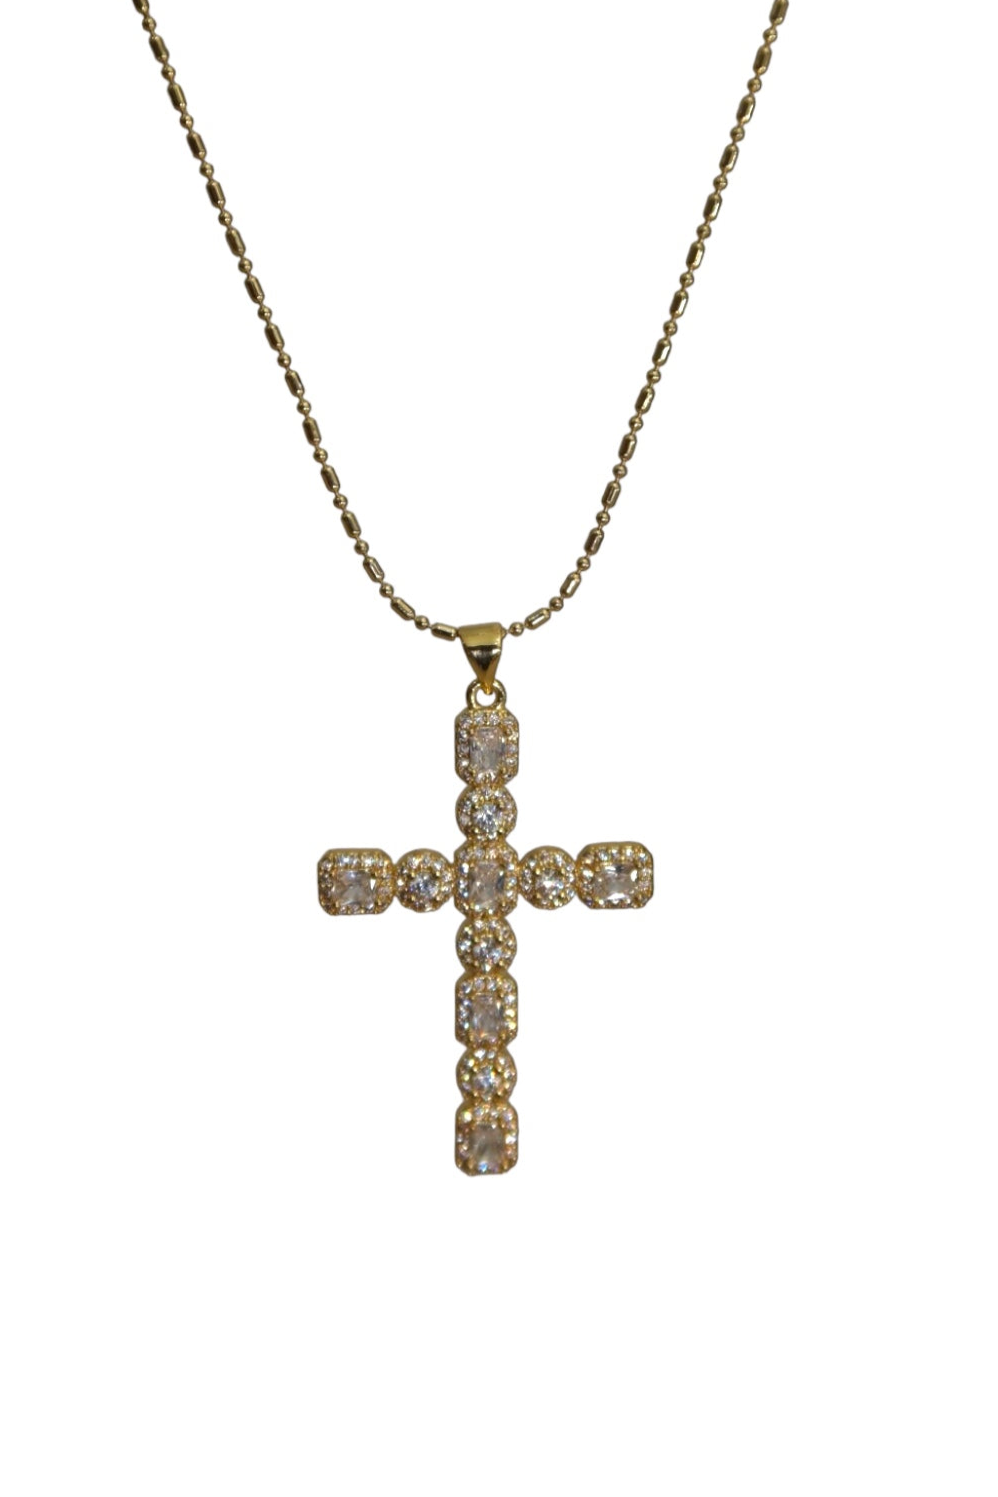 “Donna" 14k gold filled cross